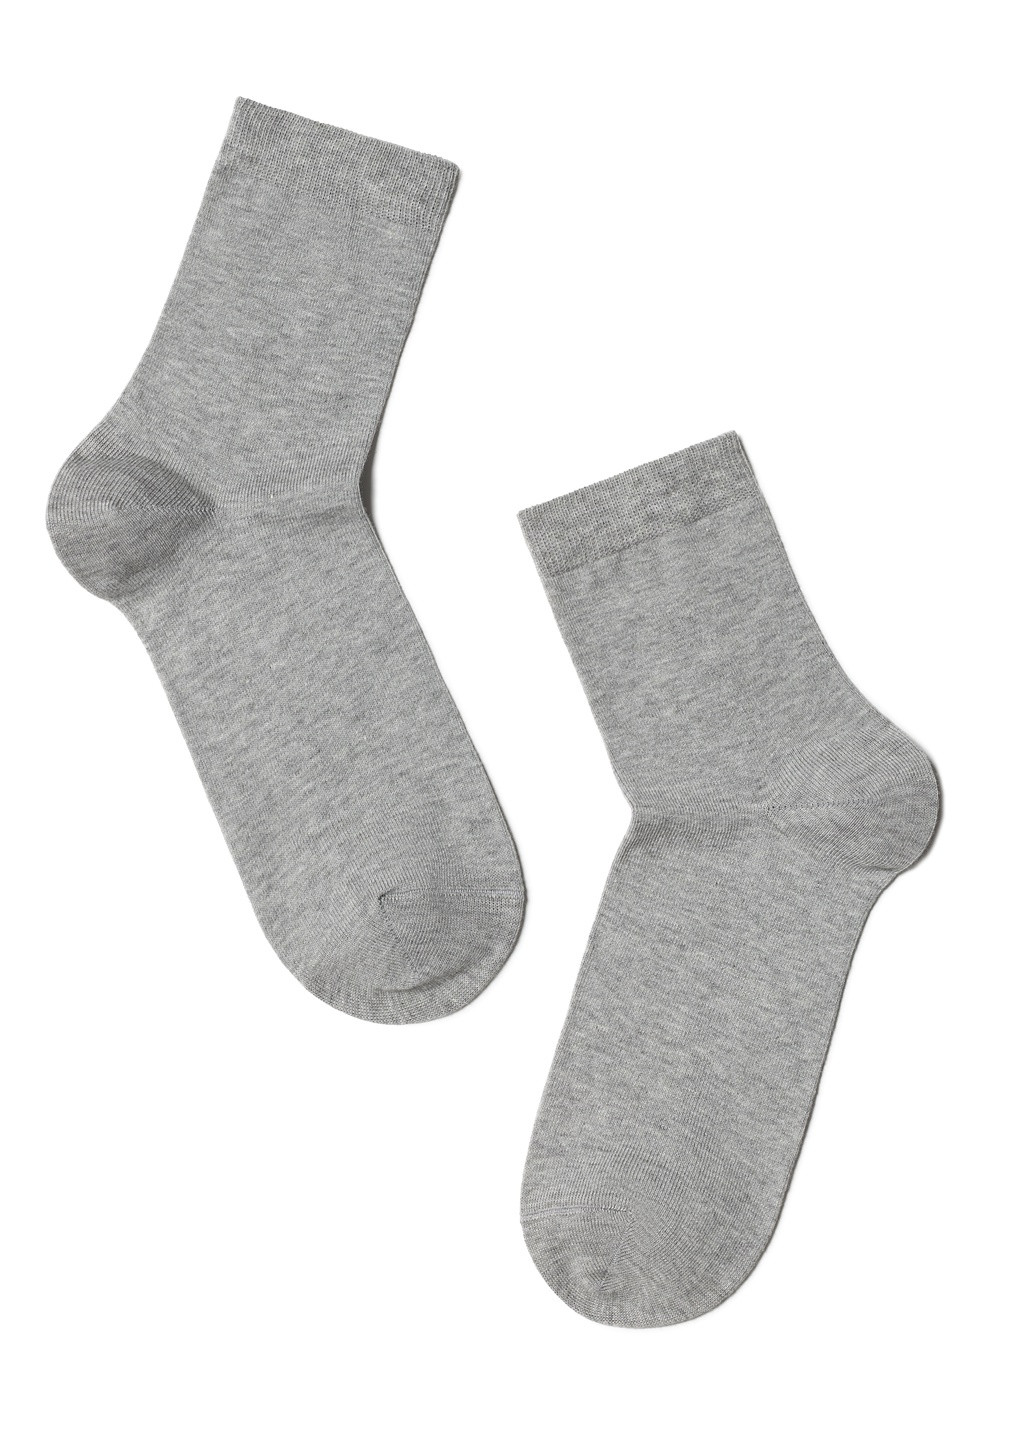 Шкарпетки жін. бавовняні, р.27, 000 чорний Conte ce classic 7с-22сп (229960768)